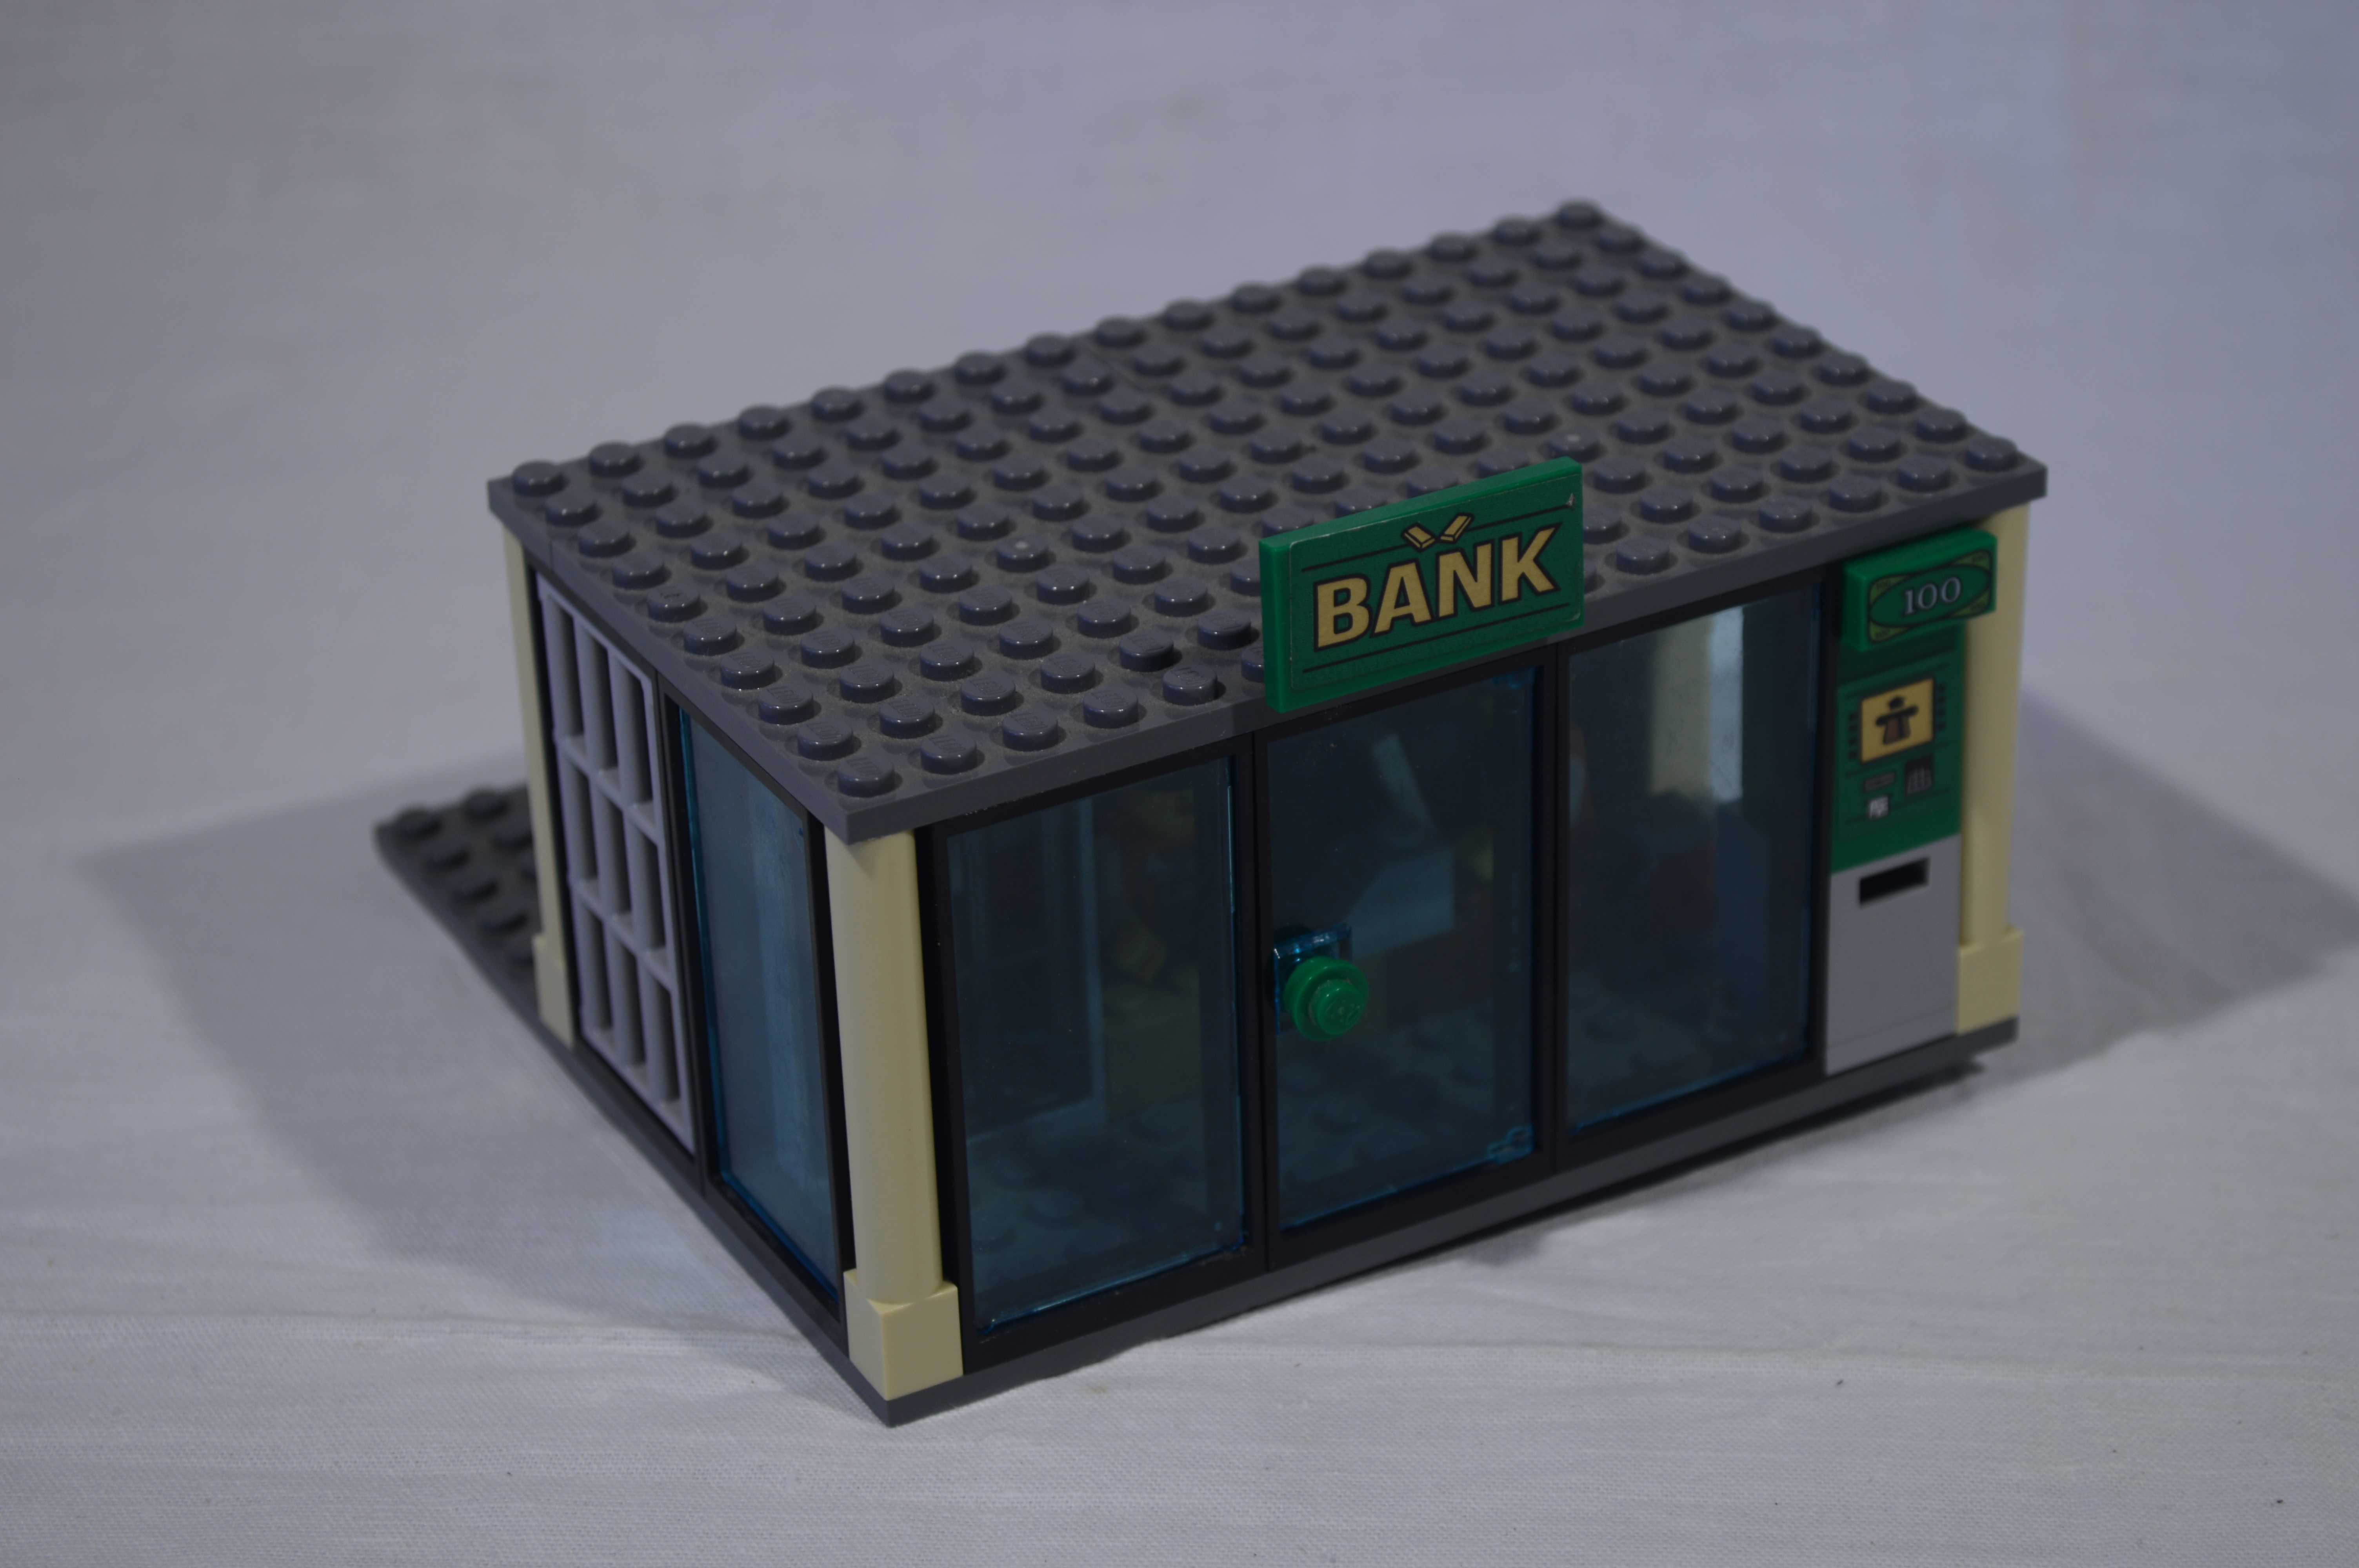 Лего-самоделки. Сборка банка